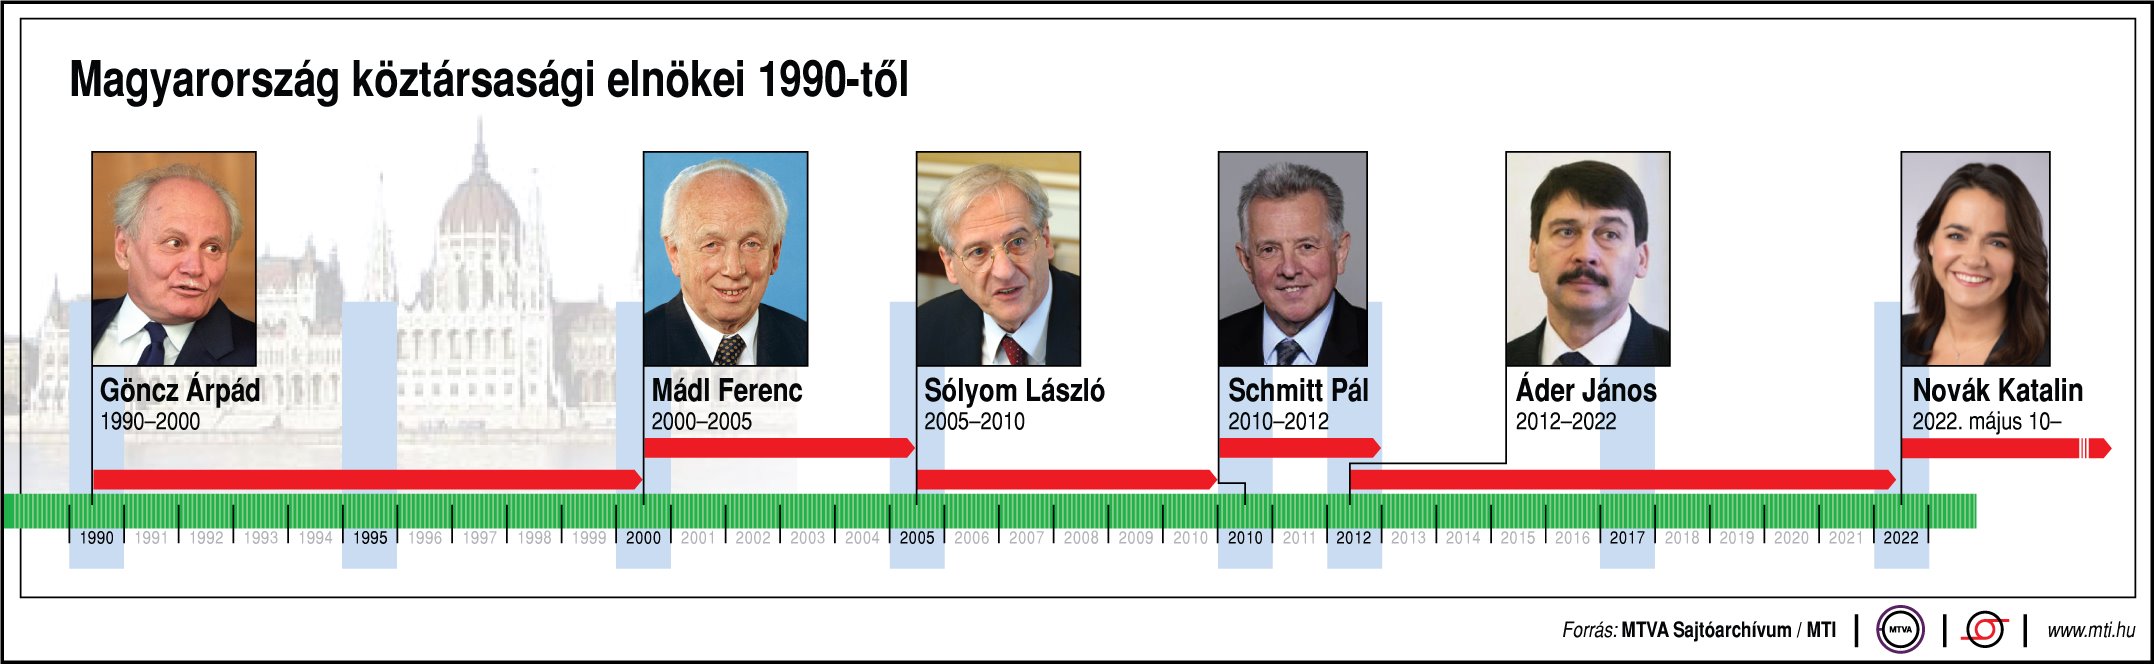 Президент Угорщини з 1990 року